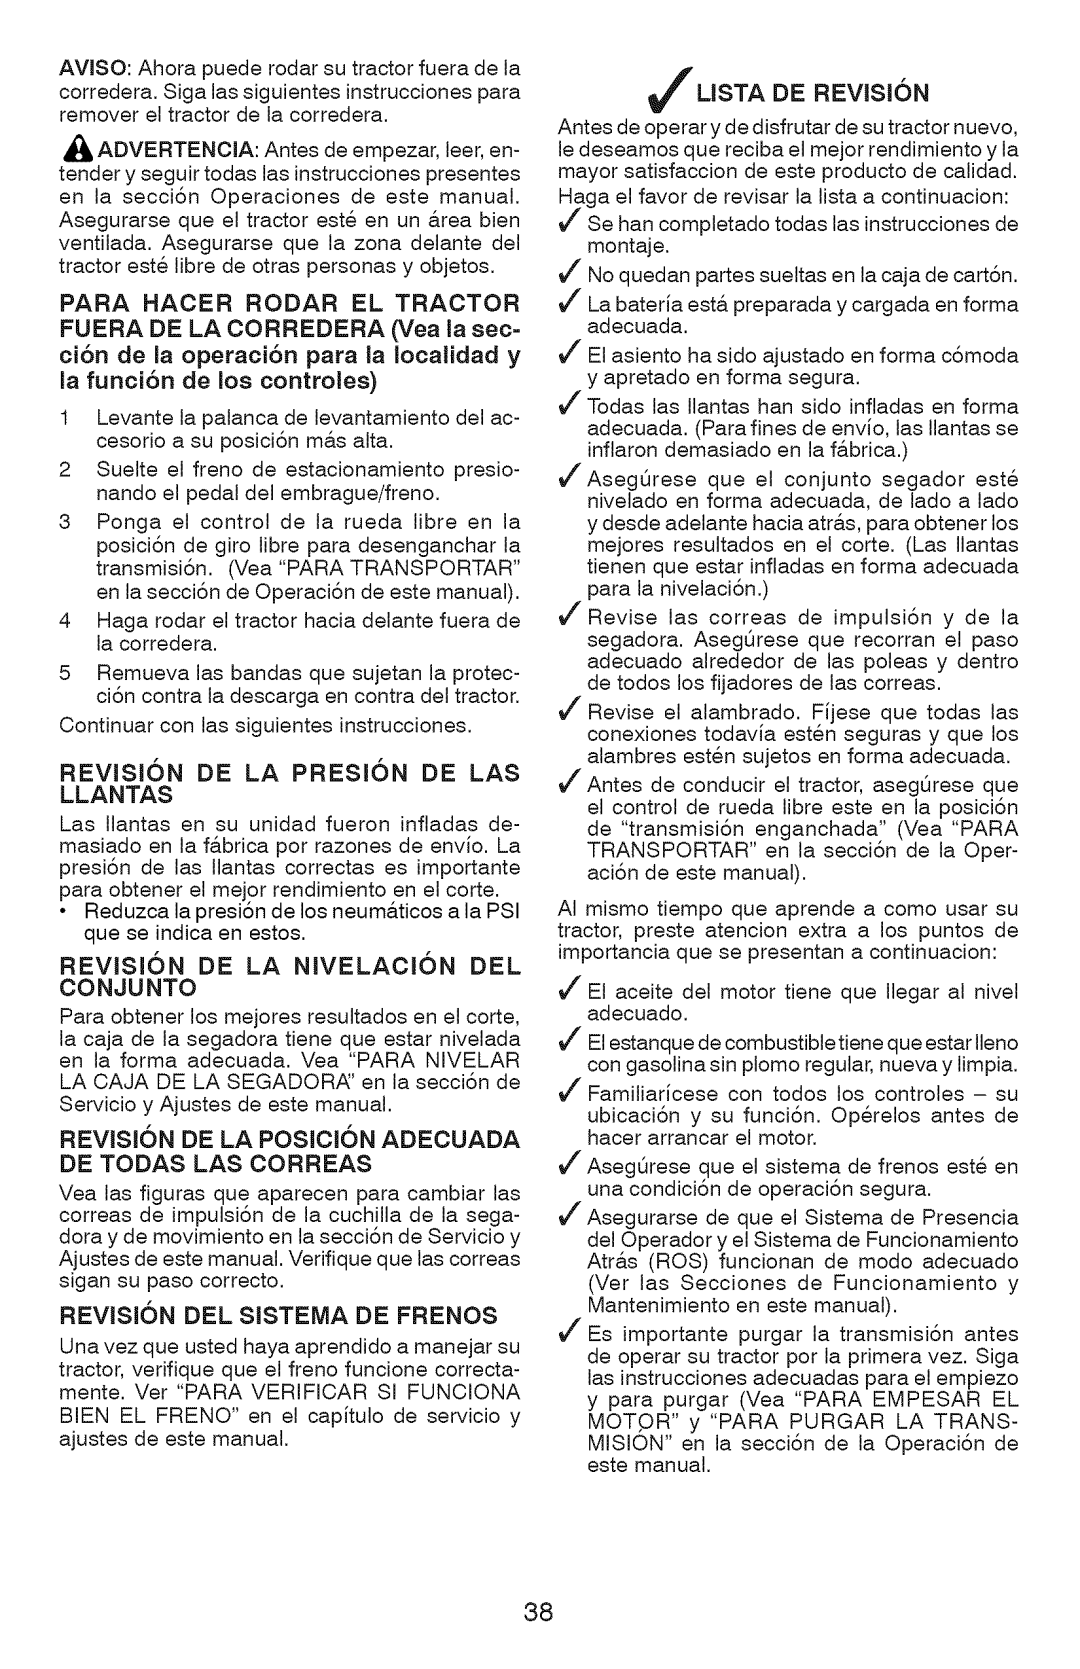 Craftsman 917.28934 owner manual Llantas, Conjunto, De Todas Las Correas, REVlSI6N DEL SISTEMA DE FRENOS, Ljsta De Revision 